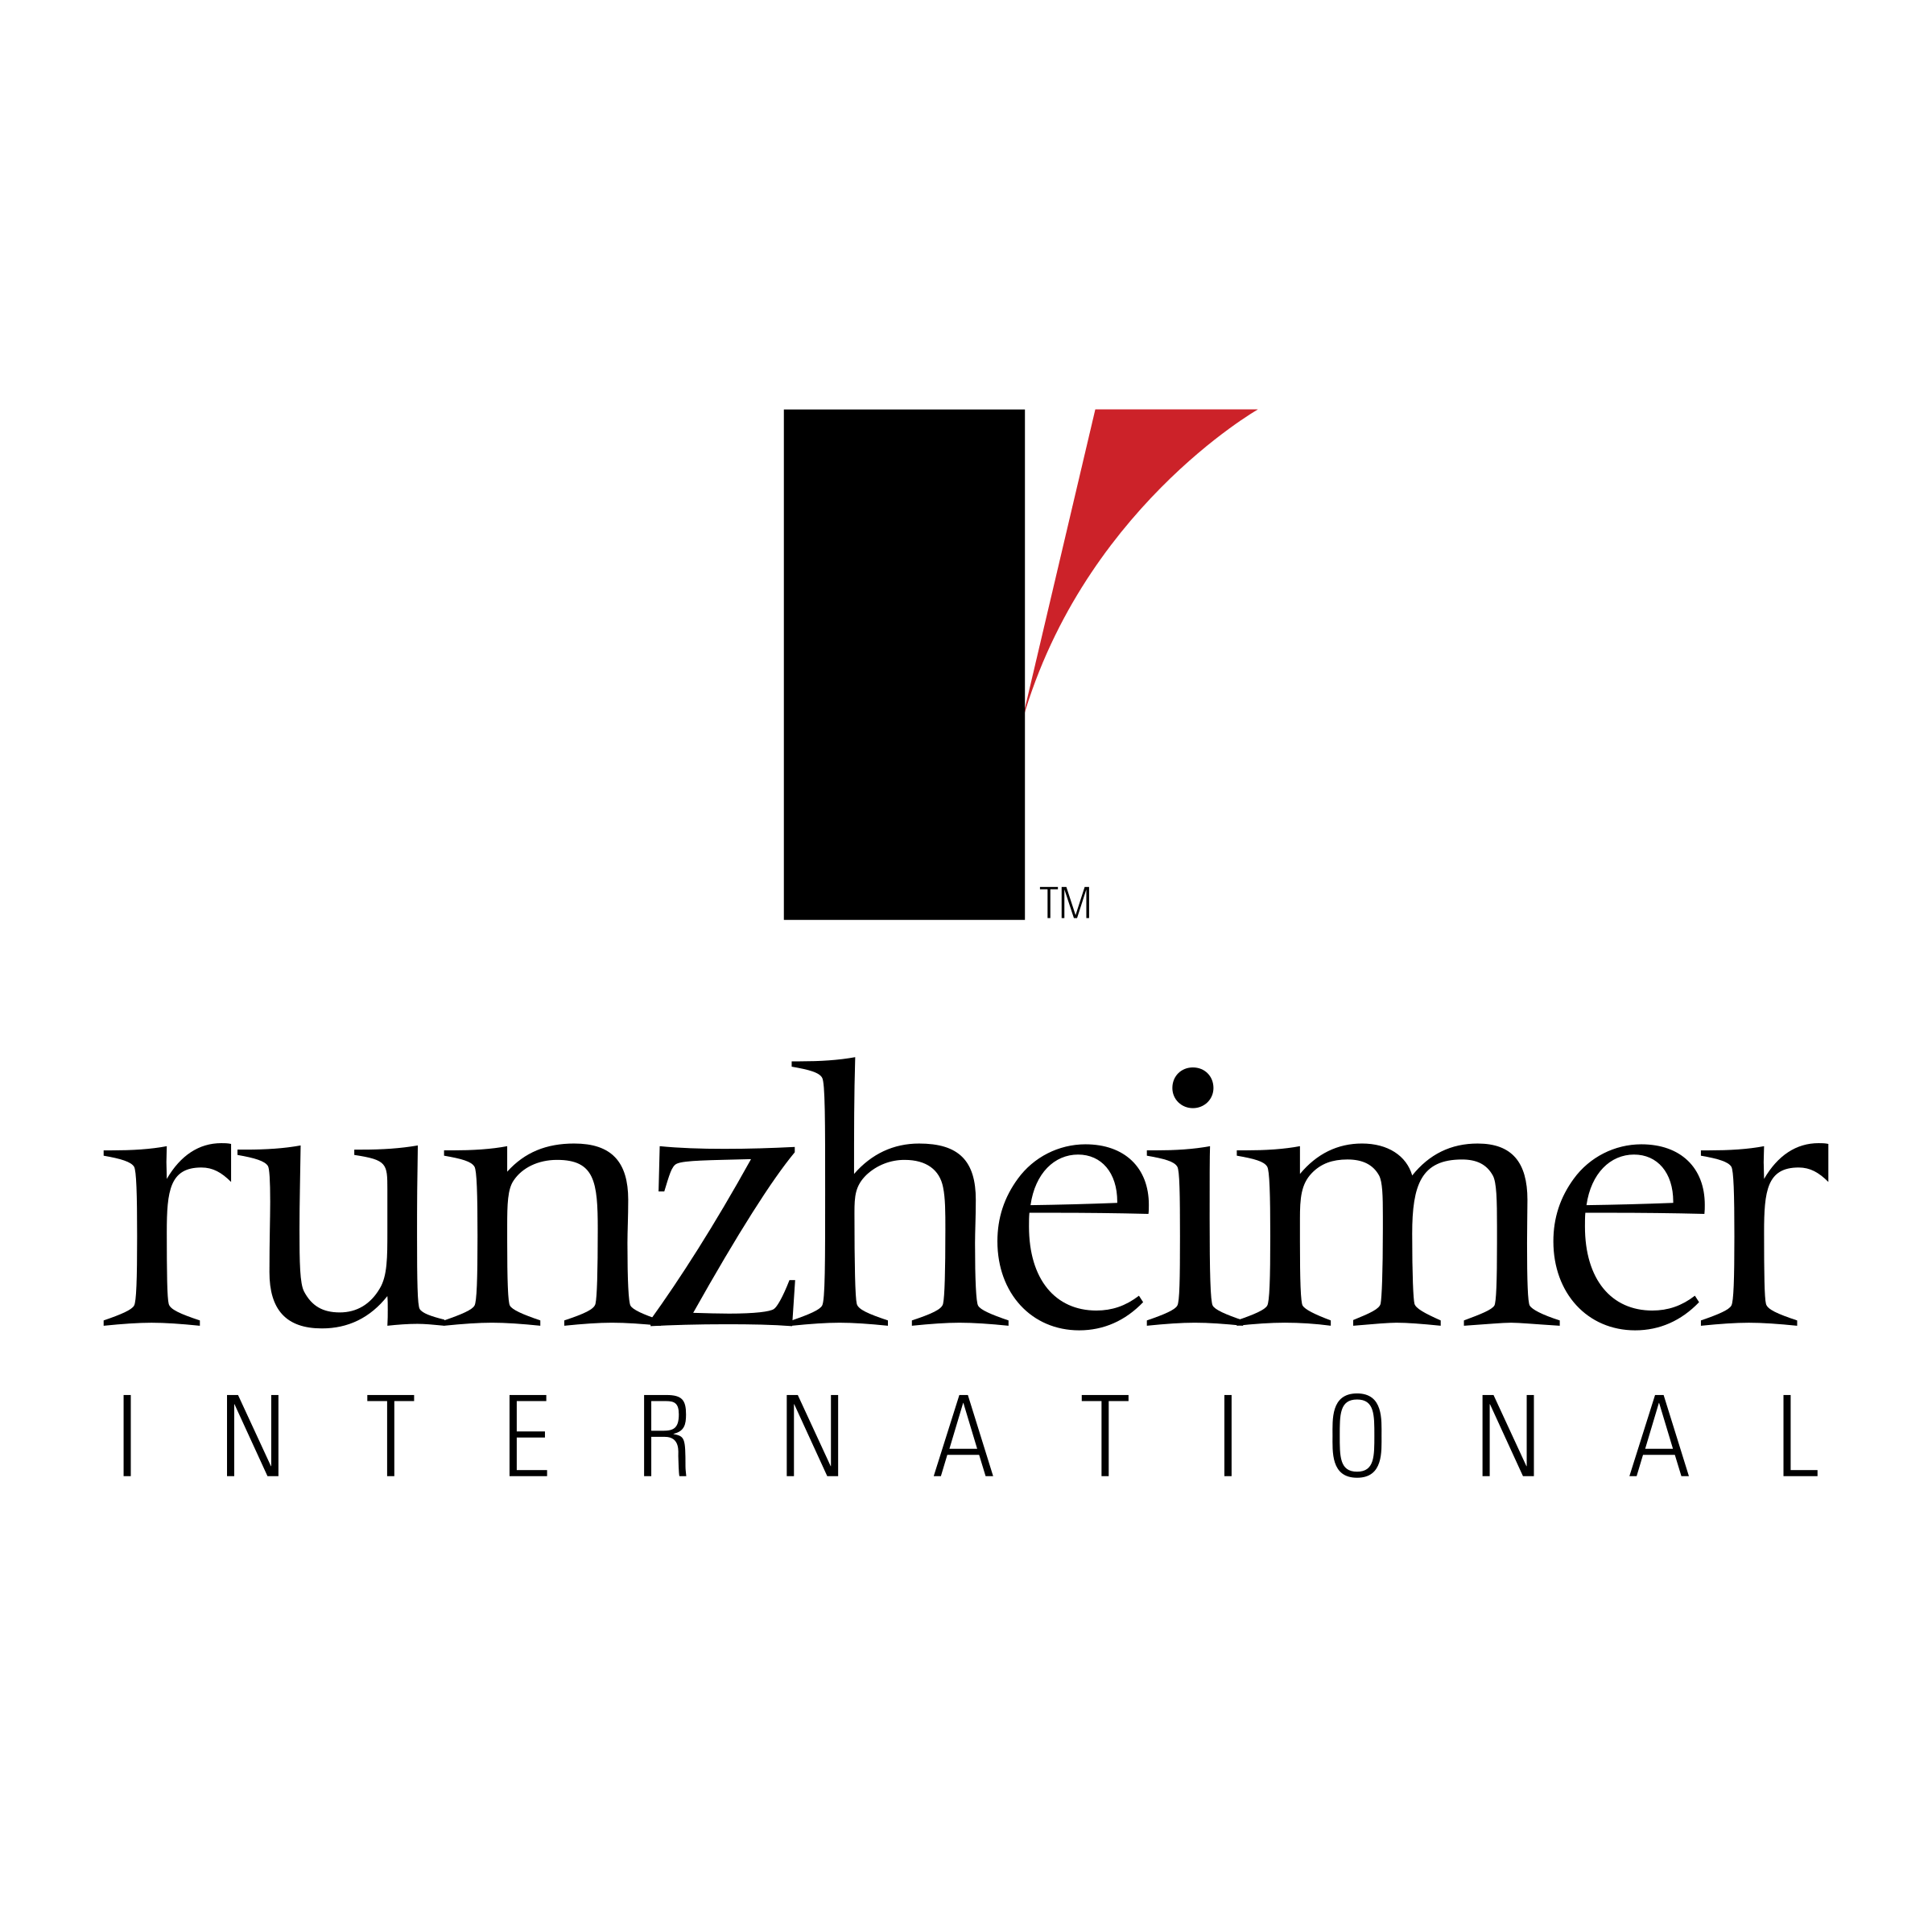 Runzheimer Logo - Runzheimer International Logo PNG Transparent & SVG Vector - Freebie ...